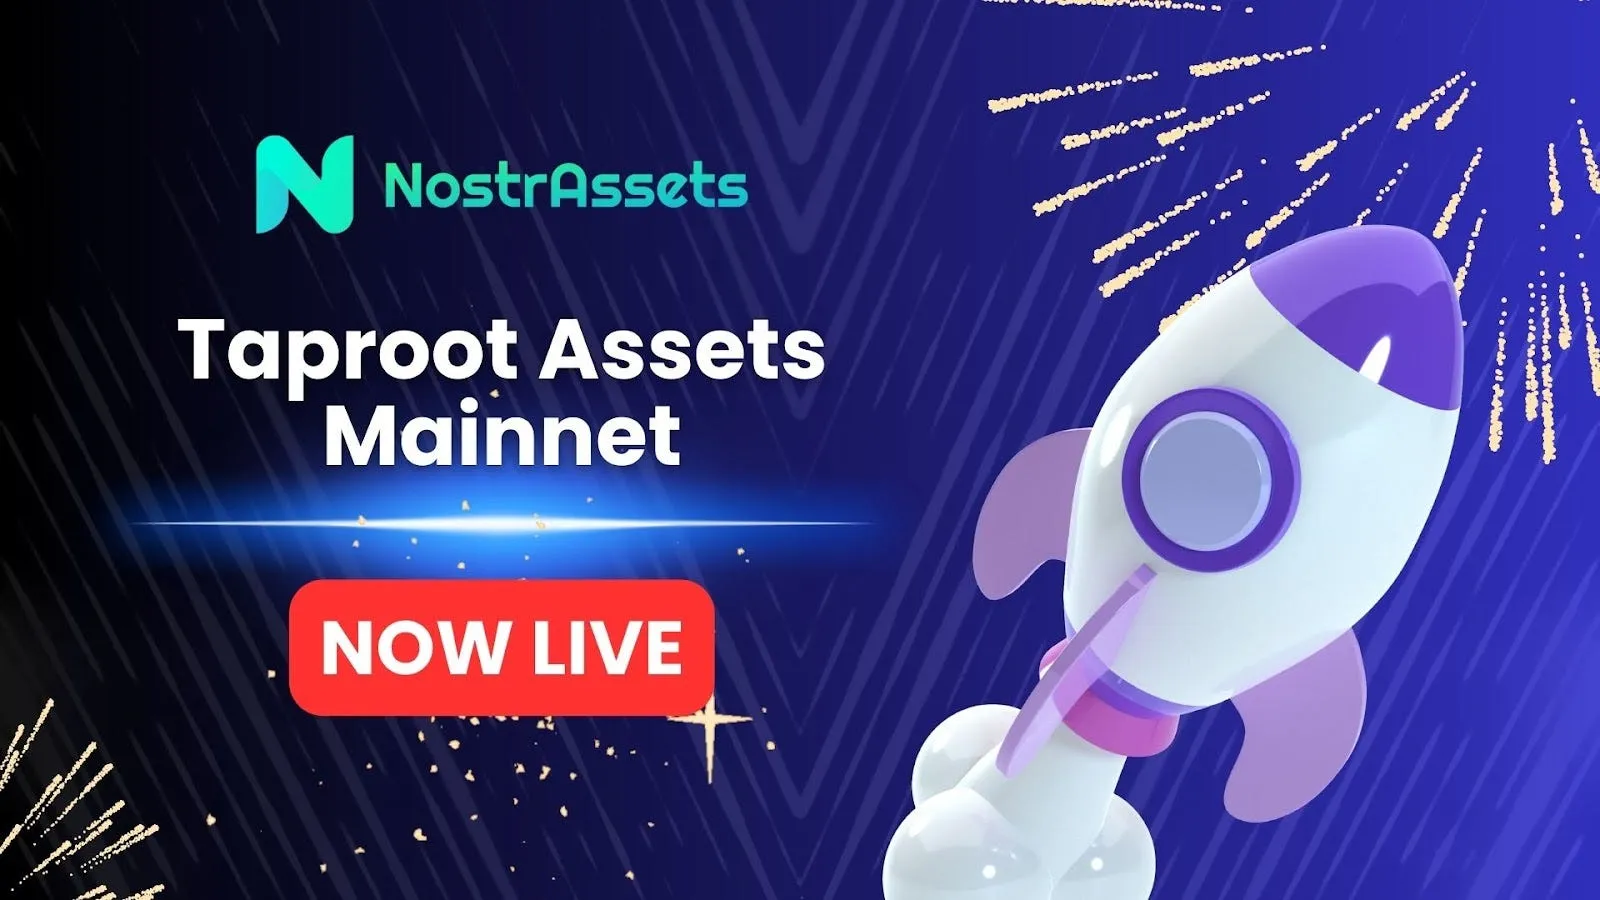 比特币新协议 Taproot Assets 上线 NostrAssets 主网，速览空投领取细则